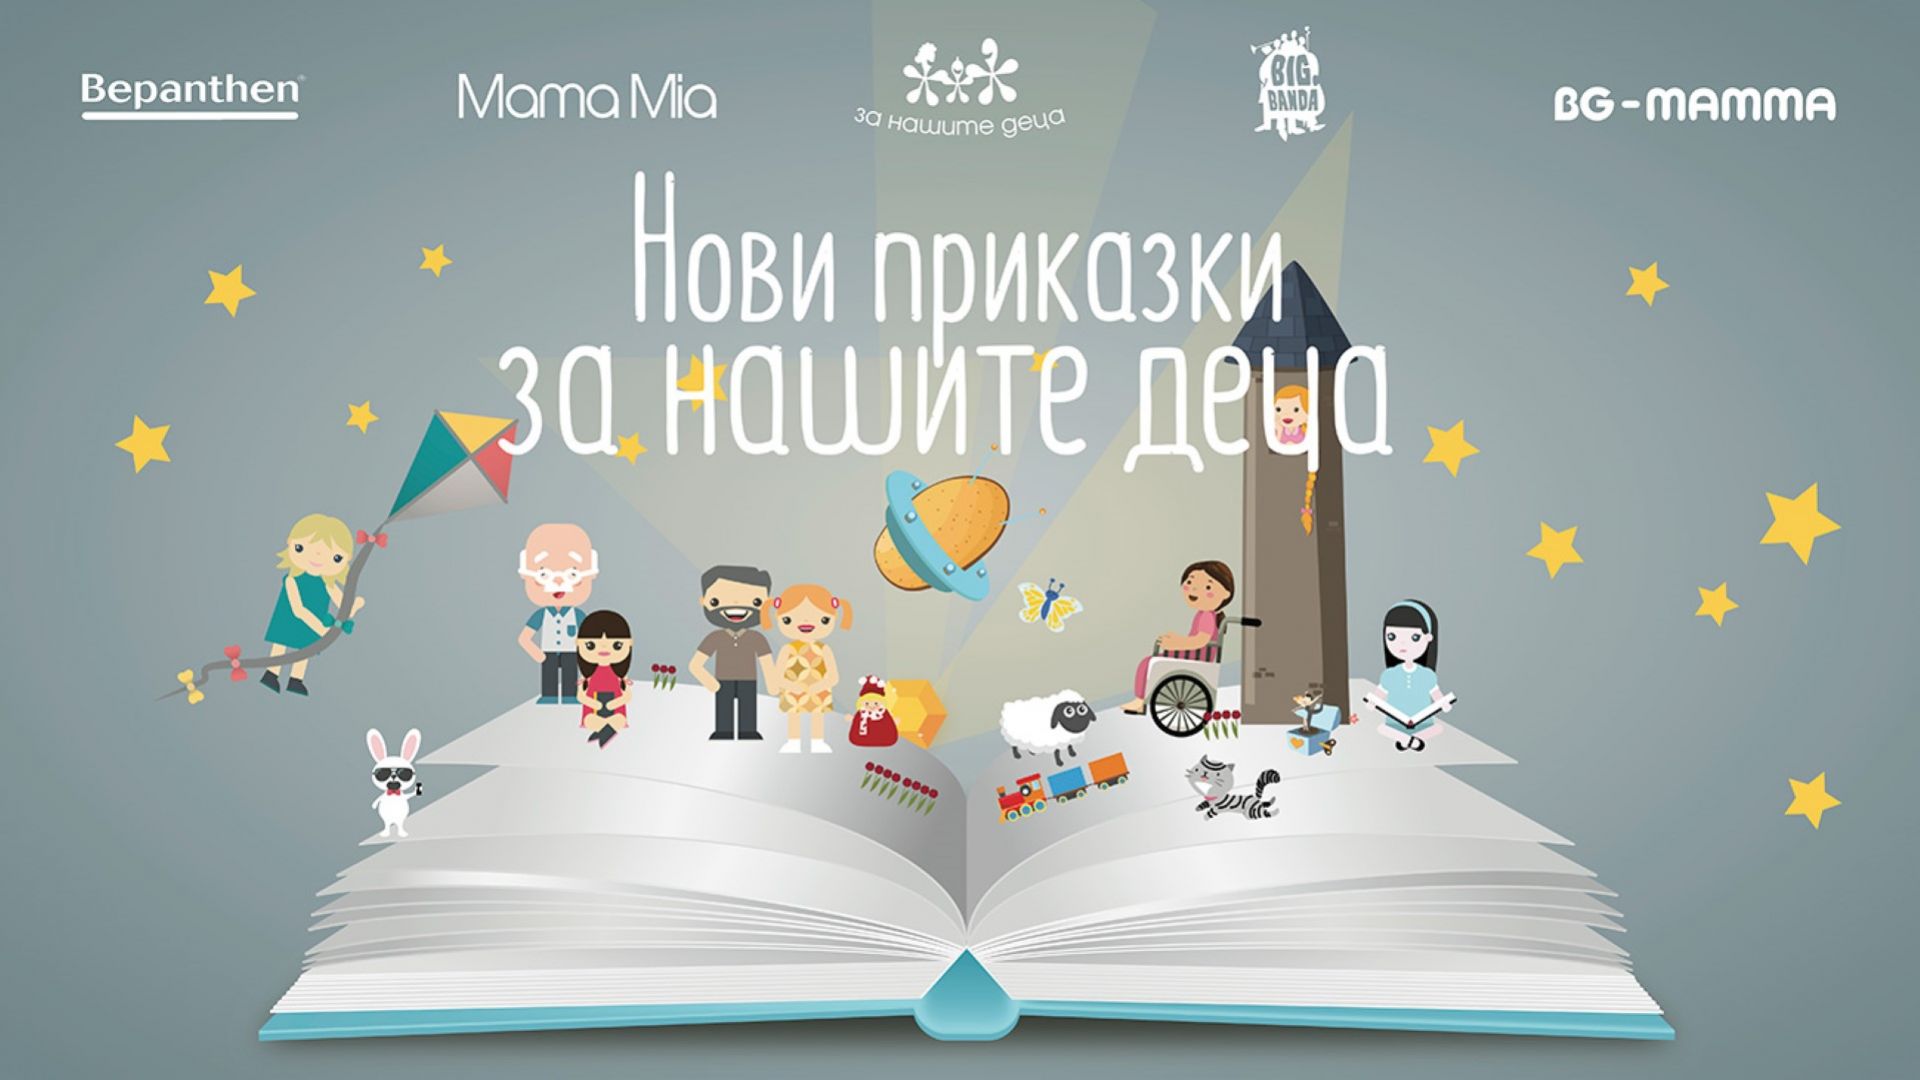 Български звезди озвучиха  "Нови приказки за нашите деца"